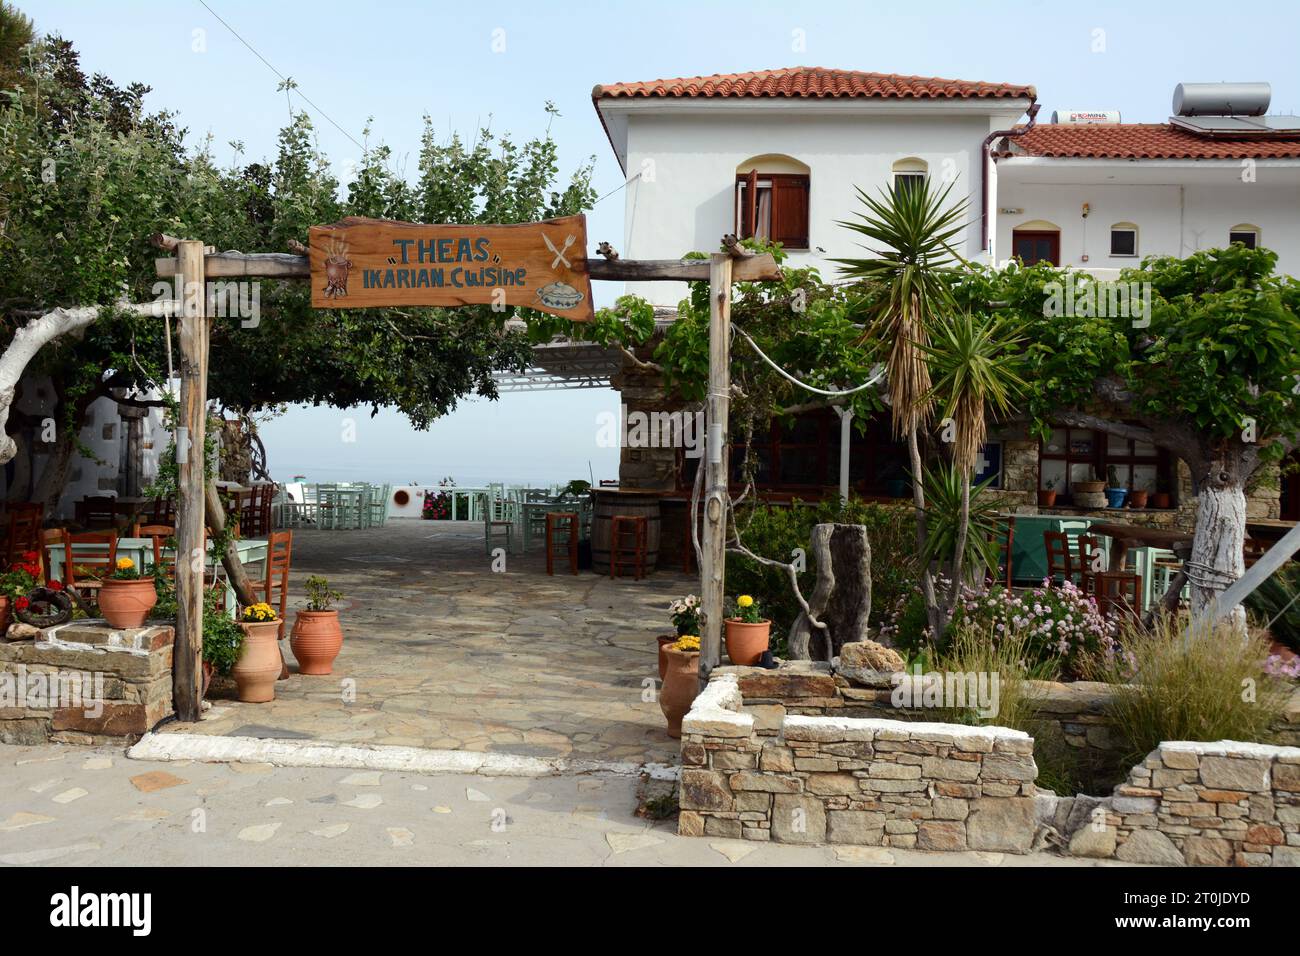 L'iconico Thea Inn e ristorante nel villaggio di NAS sulla costa nord dell'isola greca di Ikaria, una "zona blu" in Grecia. Foto Stock